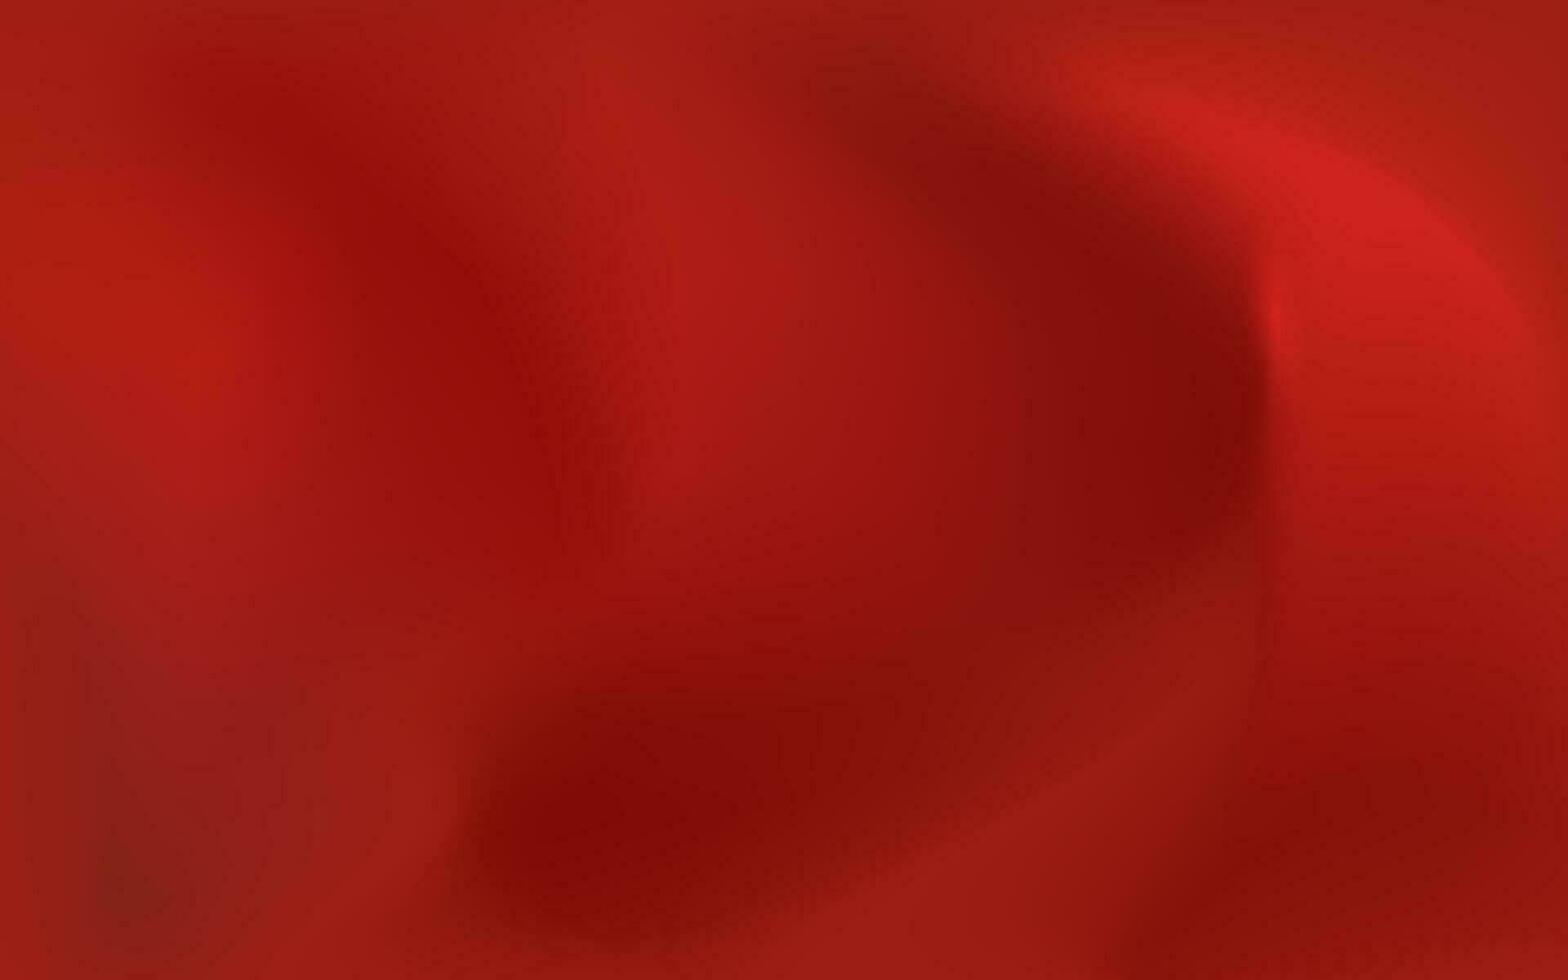 röd lutning maska bakgrund i en färgrik slät texturerad bakgrund. vektor